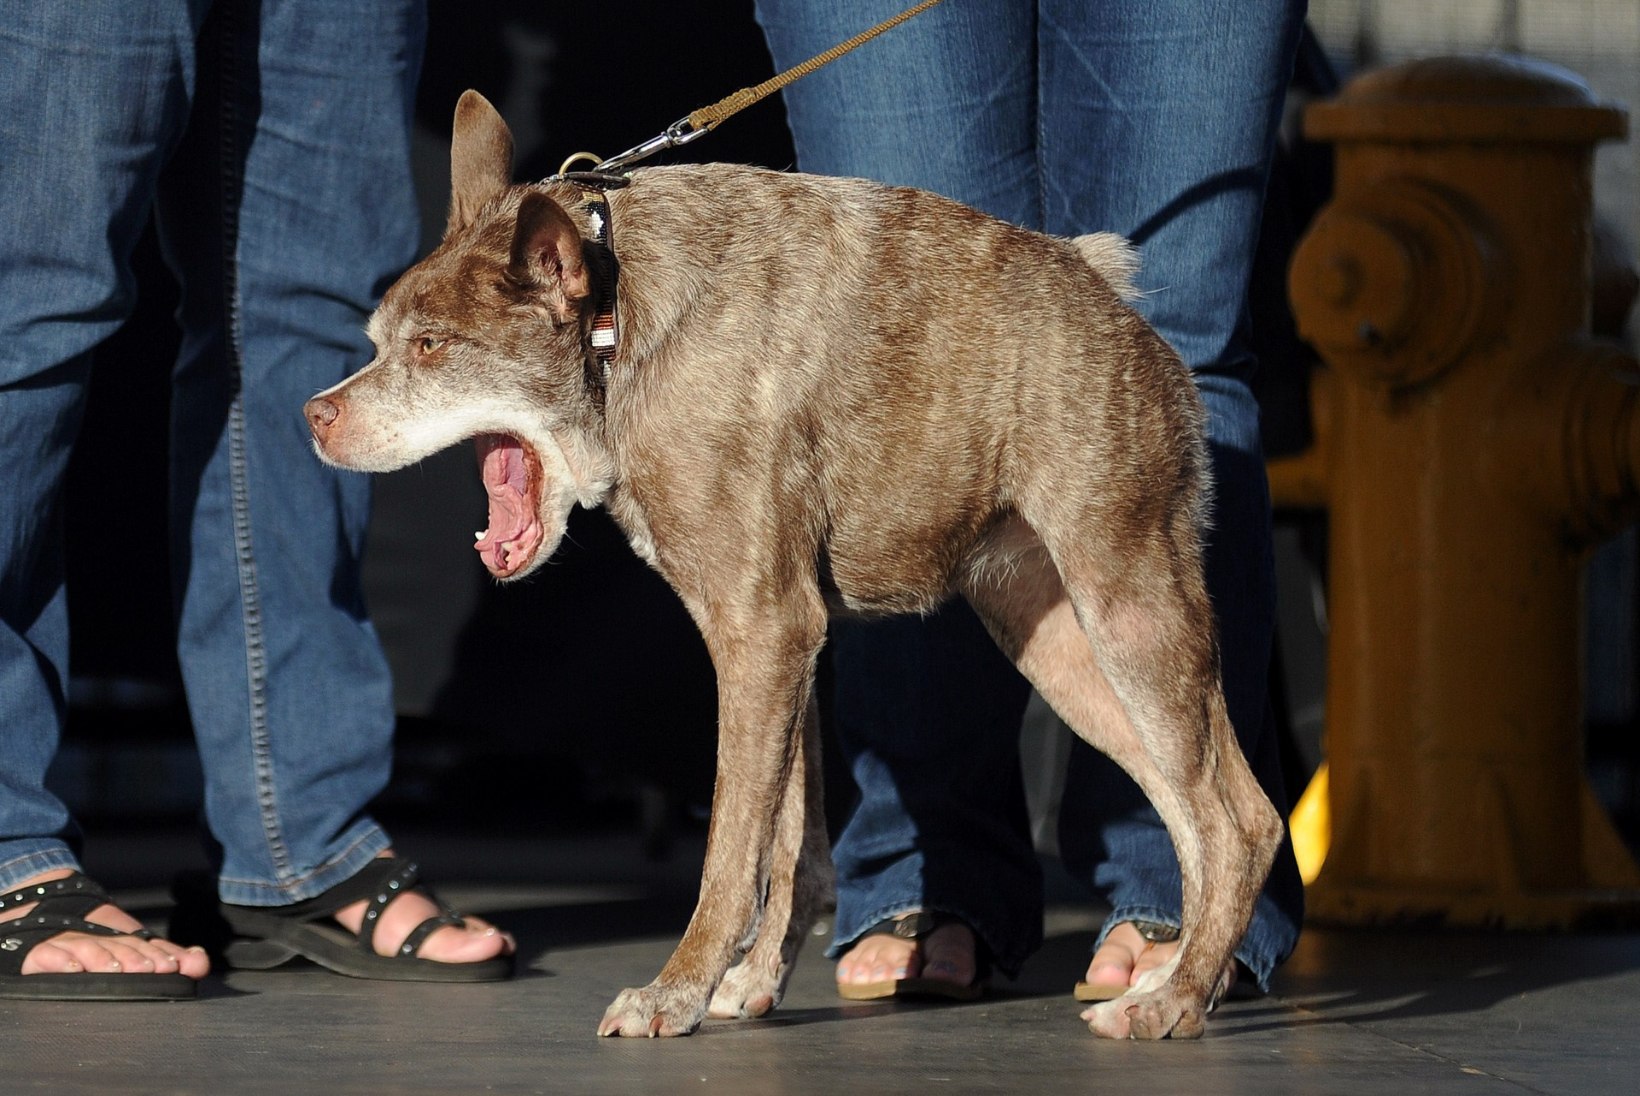 Ameerikas varjupaigas elav Quasimodo on väga eriline koer